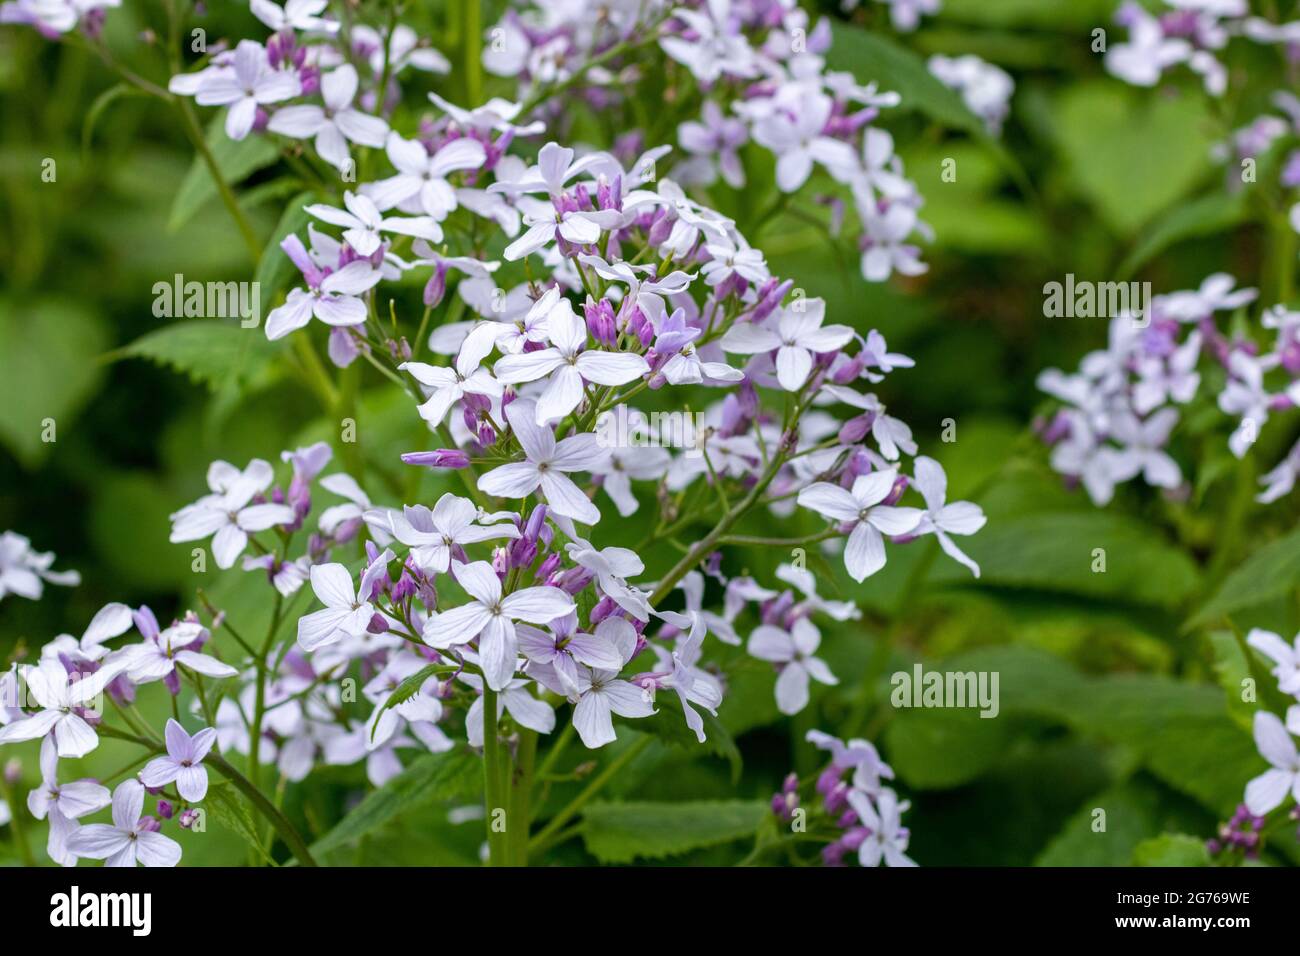 Clethra tomentosa, communément appelé doux d'été, est un arbuste décidus qui est indigène aux bois humides. Photographié à la mi-printemps au Royaume-Uni. Banque D'Images